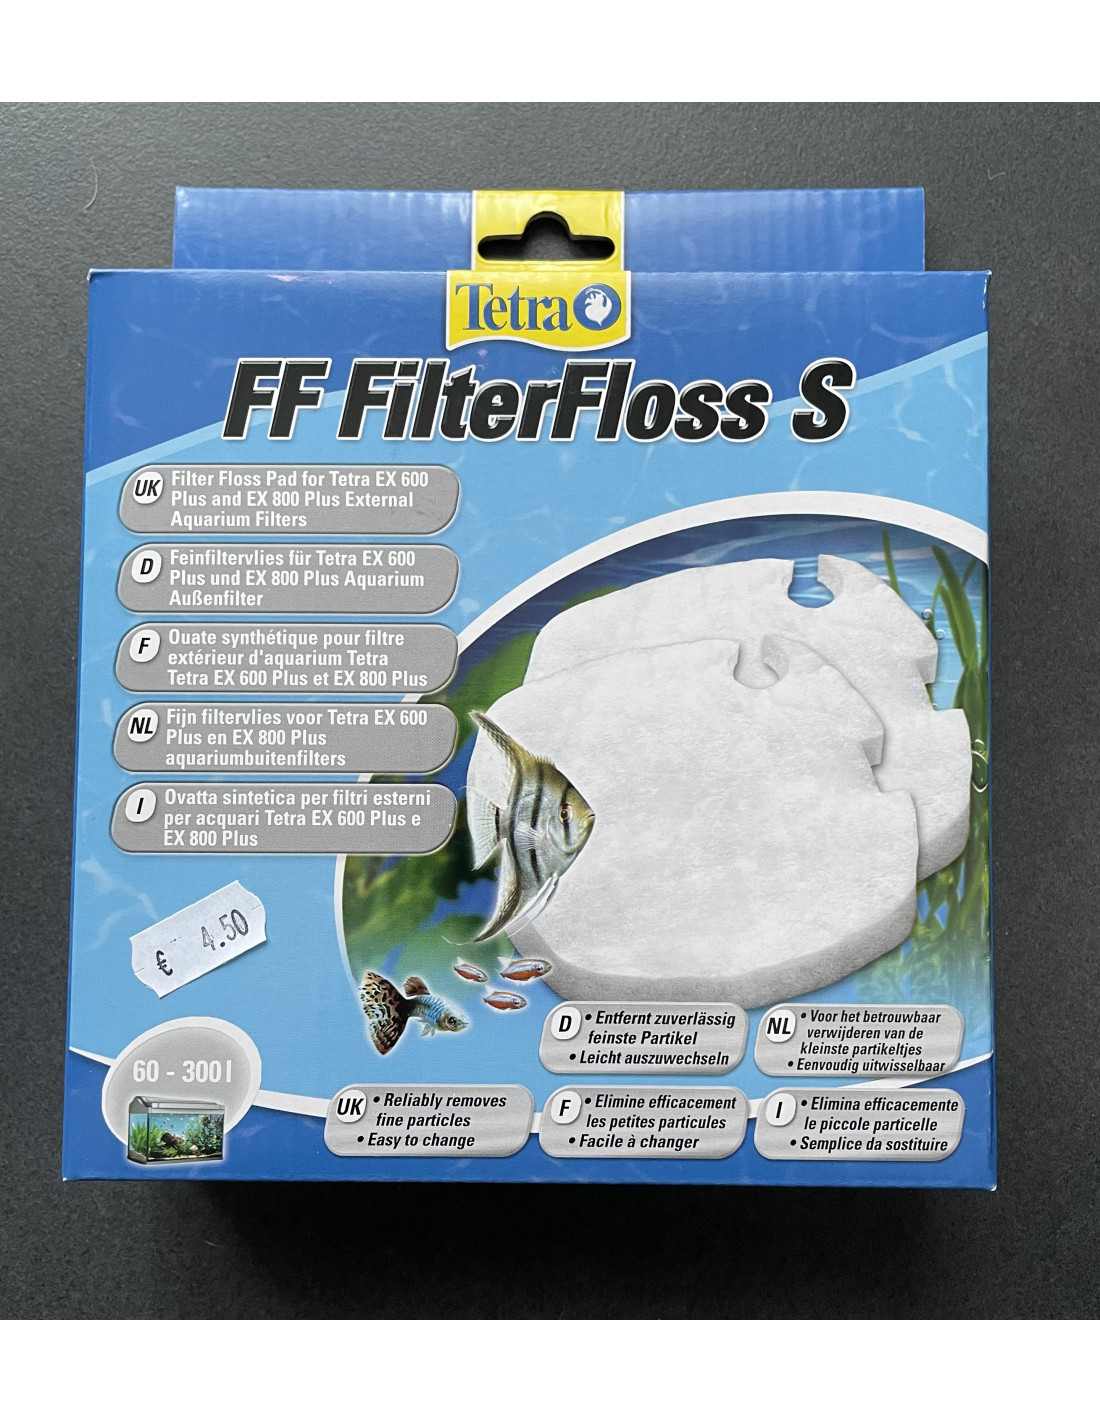 FF filter floss S